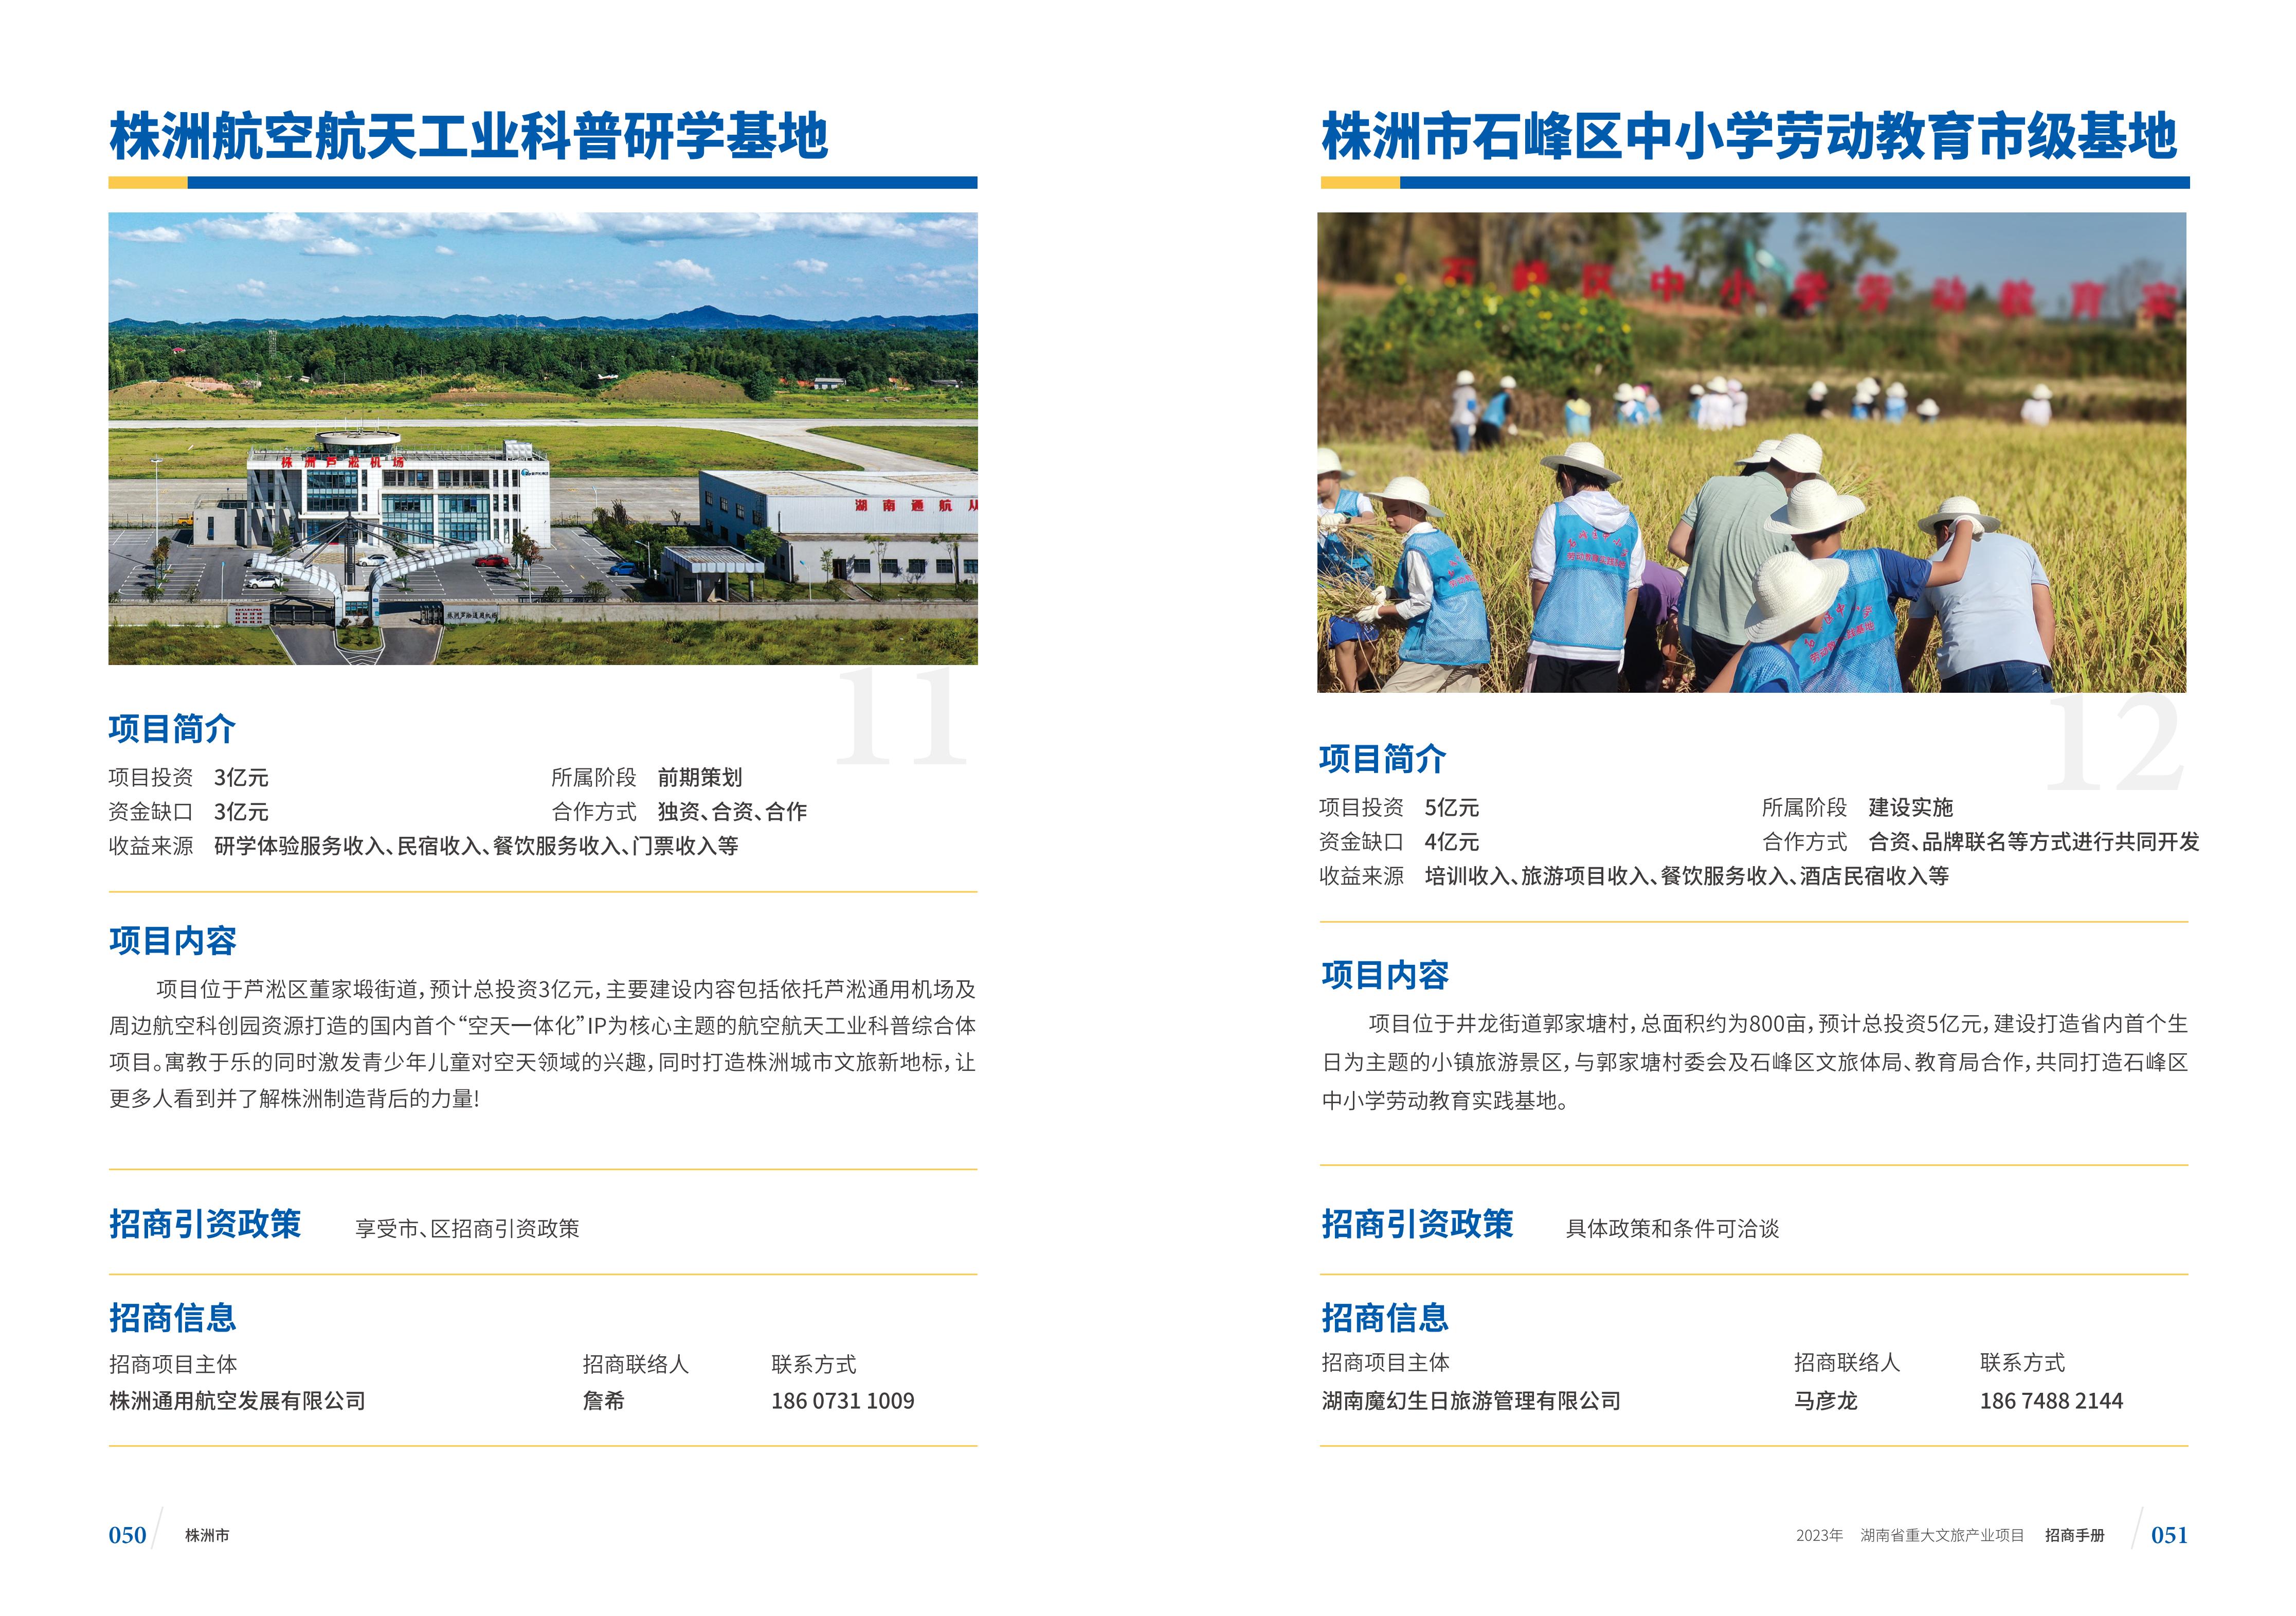 湖南省重大文旅产业项目招手册线上链接版_33.jpg